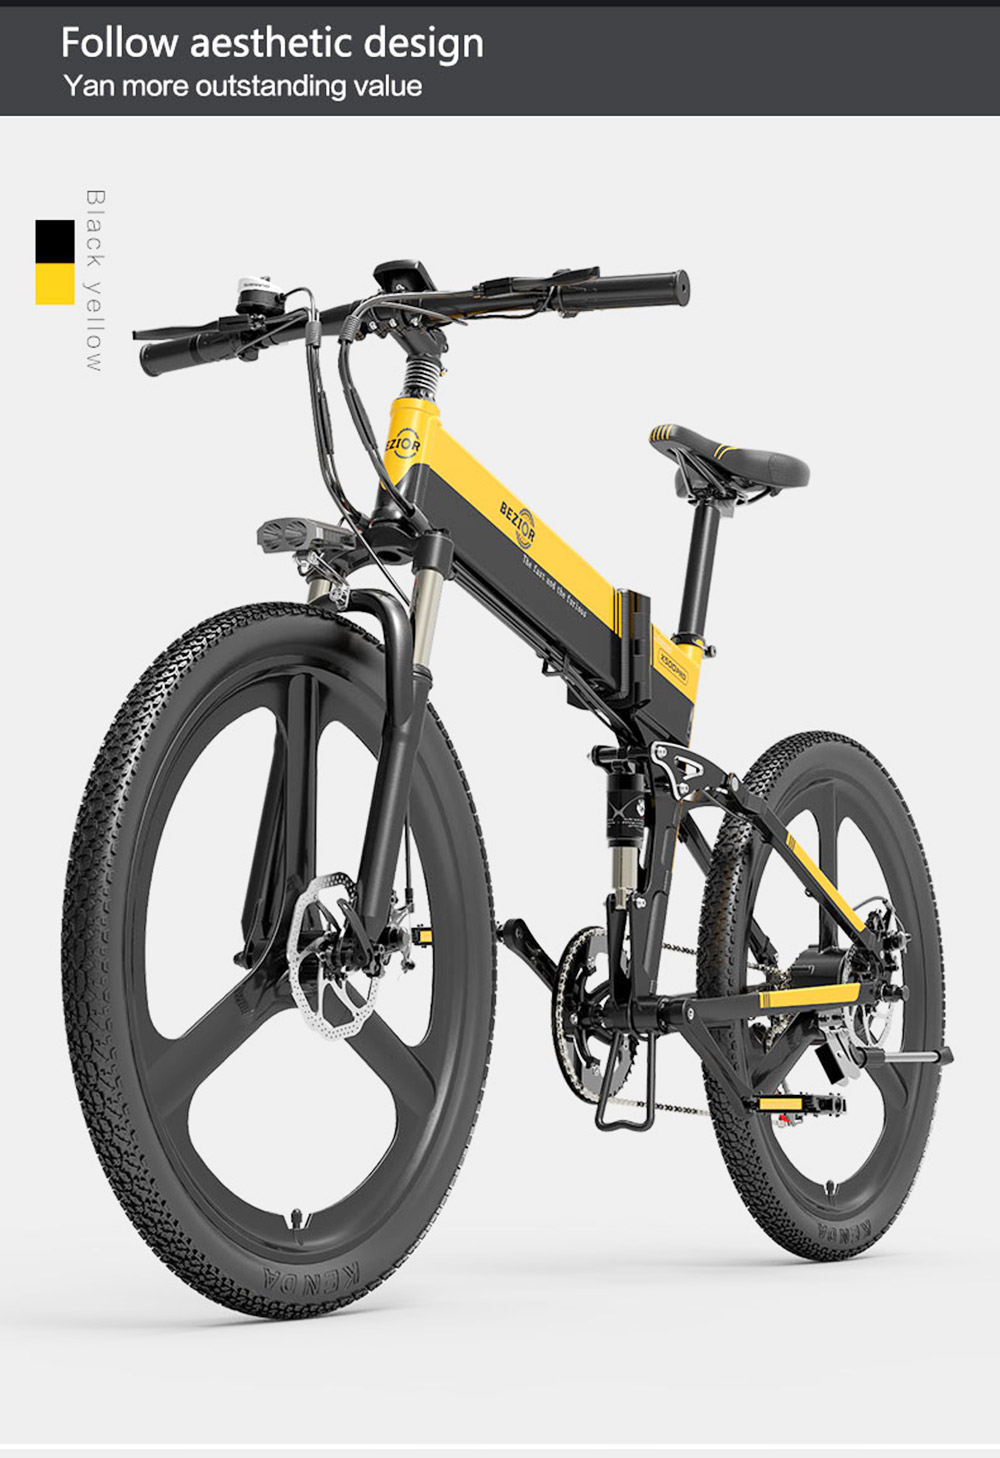 BEZIOR X500PRO Składany elektryczny rower górski 500W 30Km/h Czarny Żółty